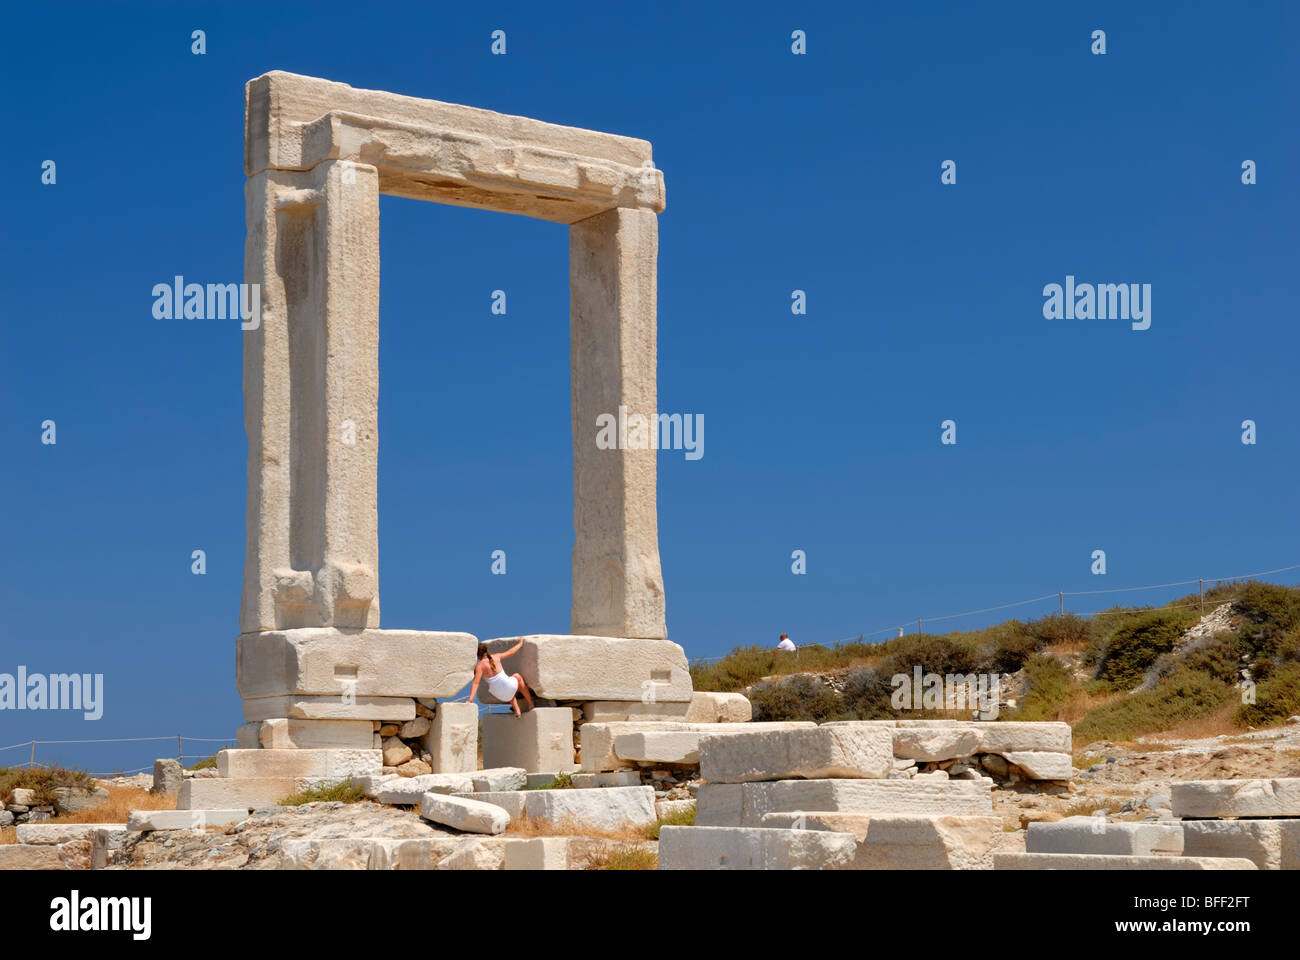 Die riesige Marmor Tor, die Portara fängt Ihr Auge, sobald Sie in Naxos ankommen. Ein Tourist versucht verzweifelt zu klettern... Stockfoto